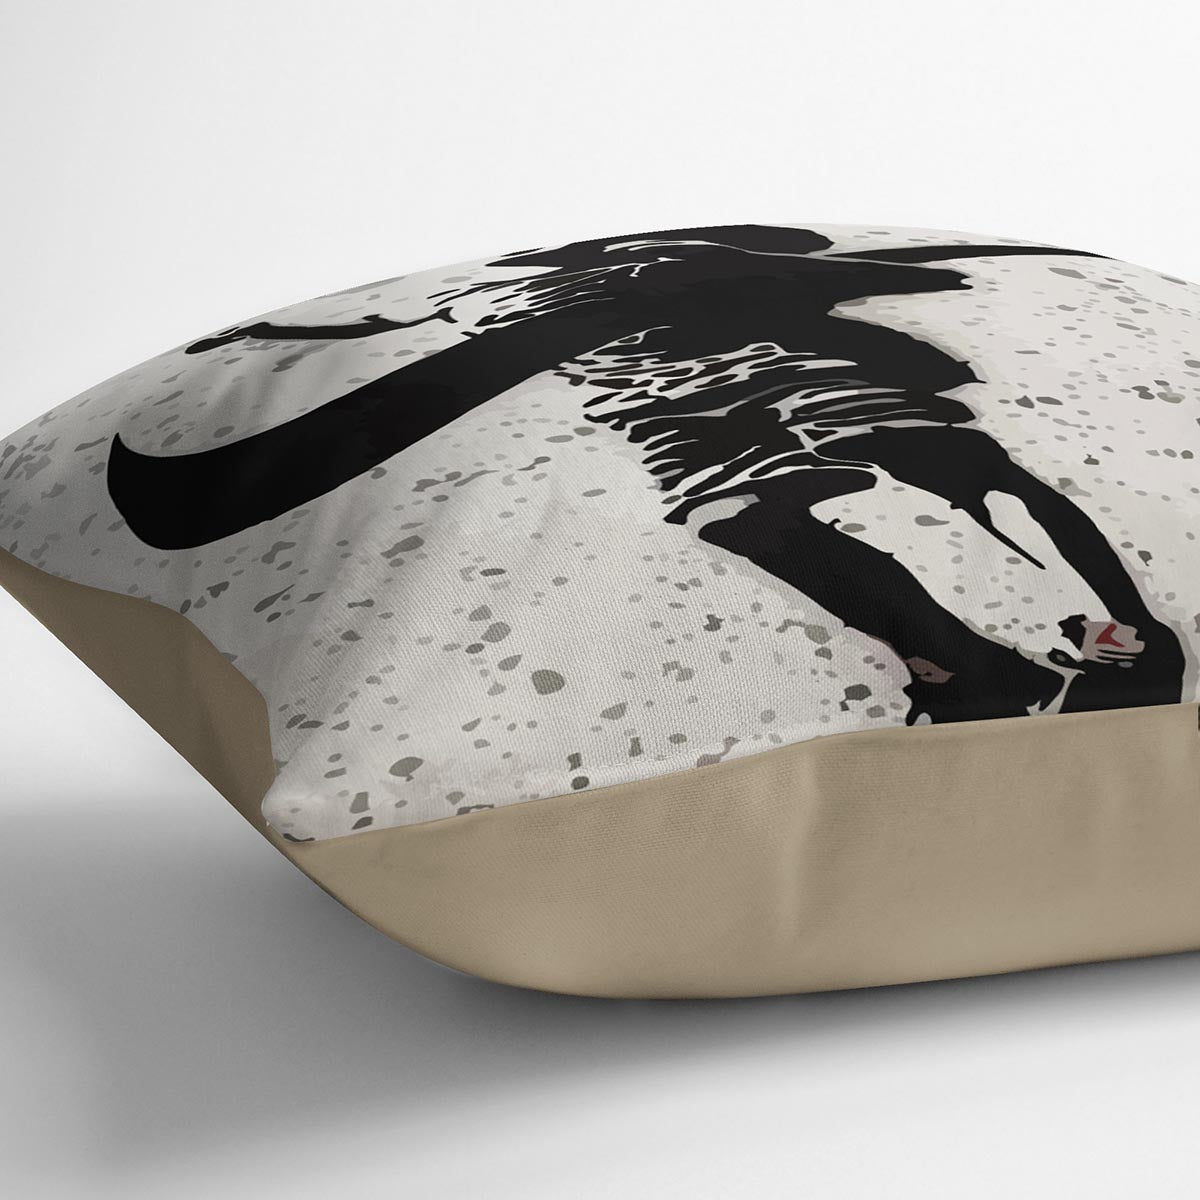 Banksy Nike Cushion